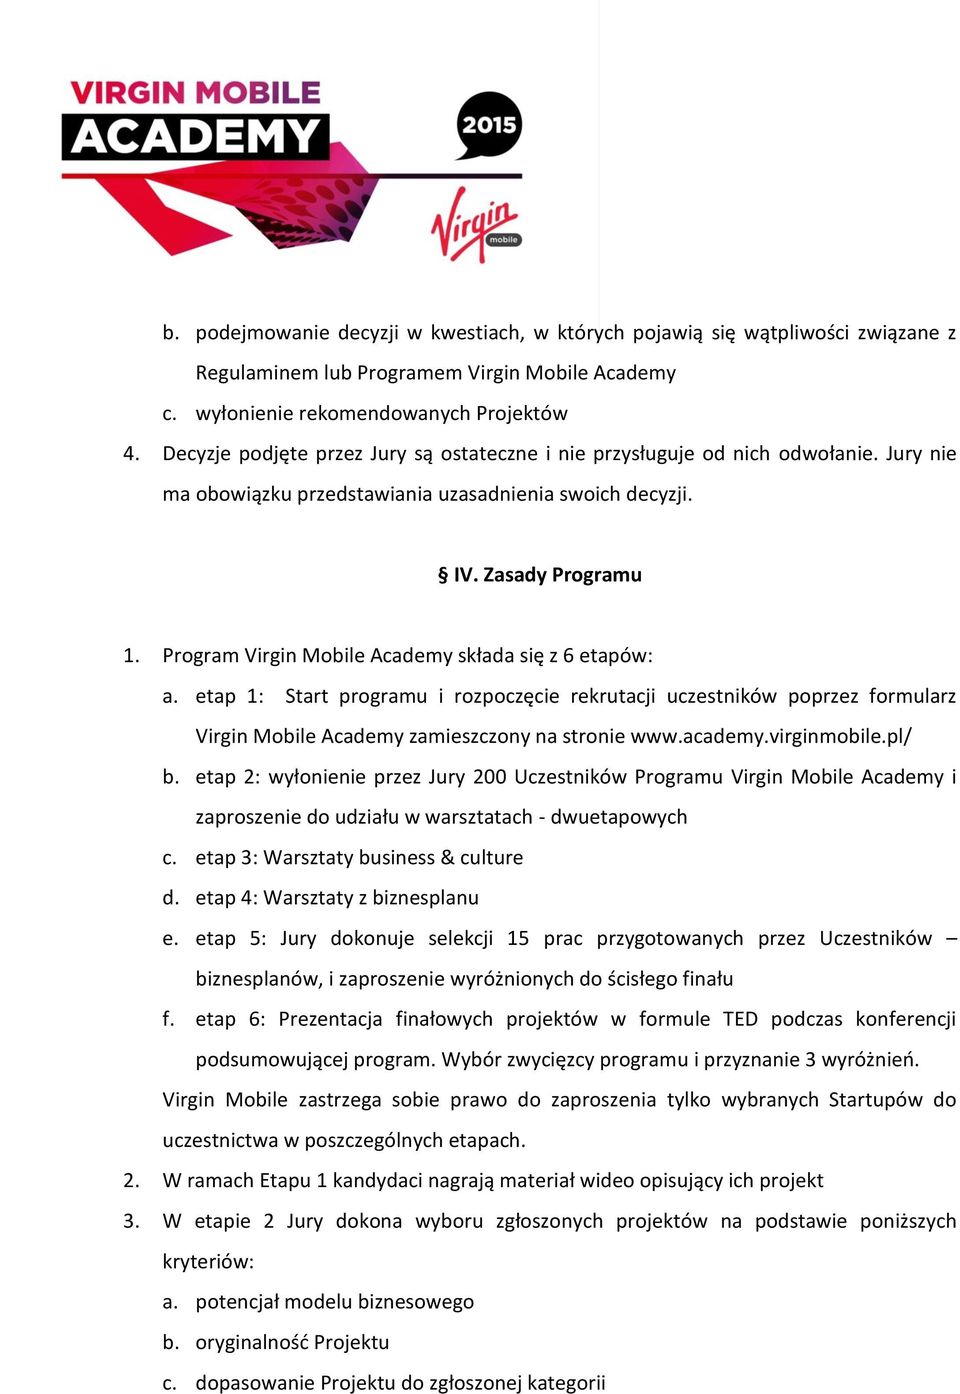 Program Virgin Mobile Academy składa się z 6 etapów: a. etap 1: Start programu i rozpoczęcie rekrutacji uczestników poprzez formularz Virgin Mobile Academy zamieszczony na stronie www.academy.